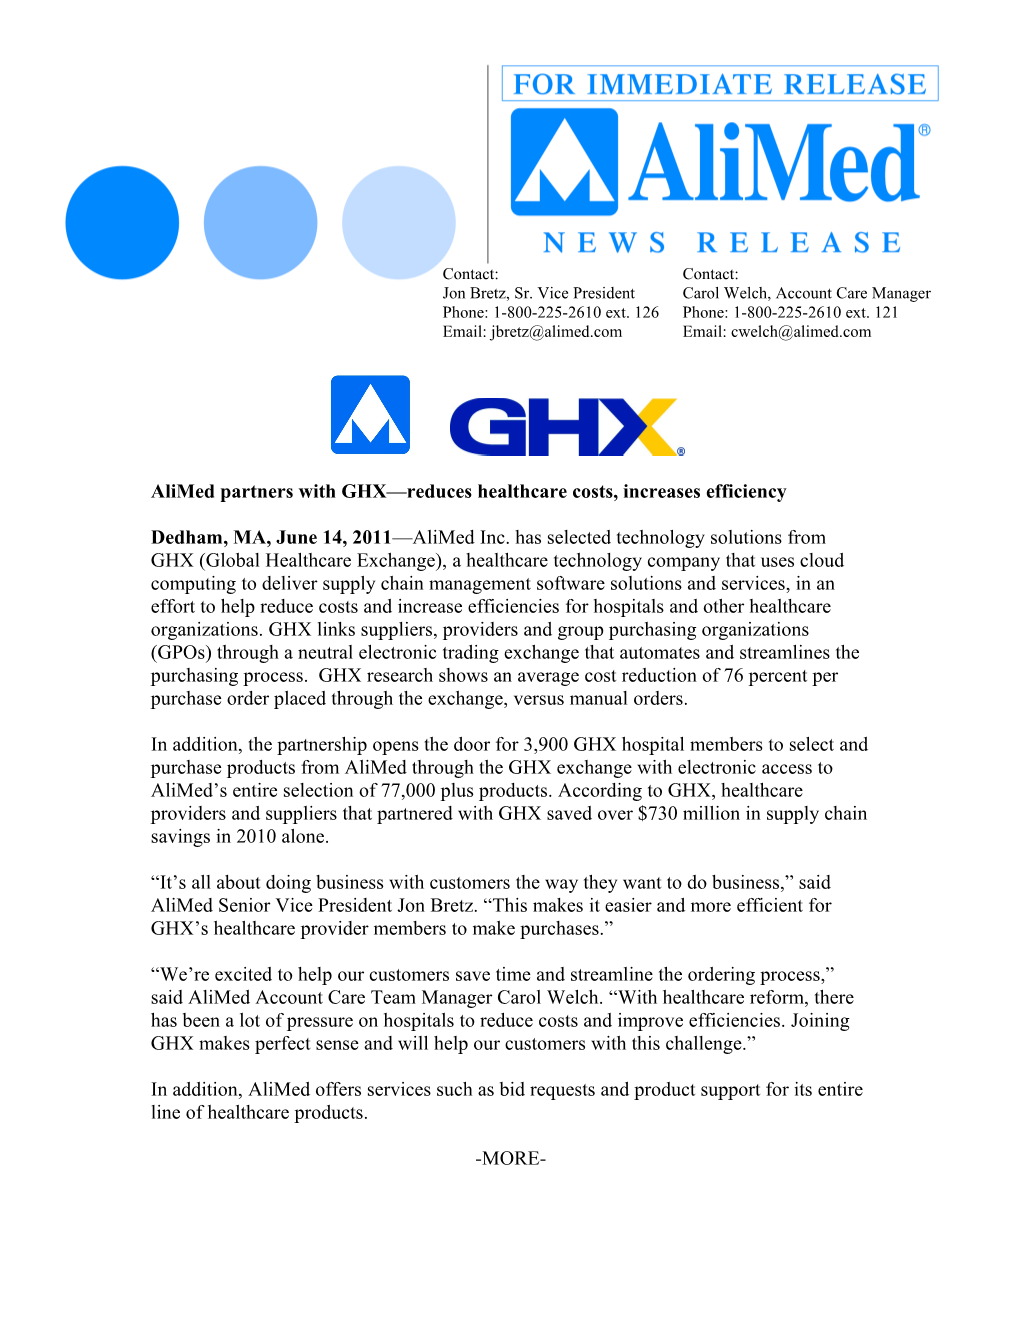 GHX Press Release